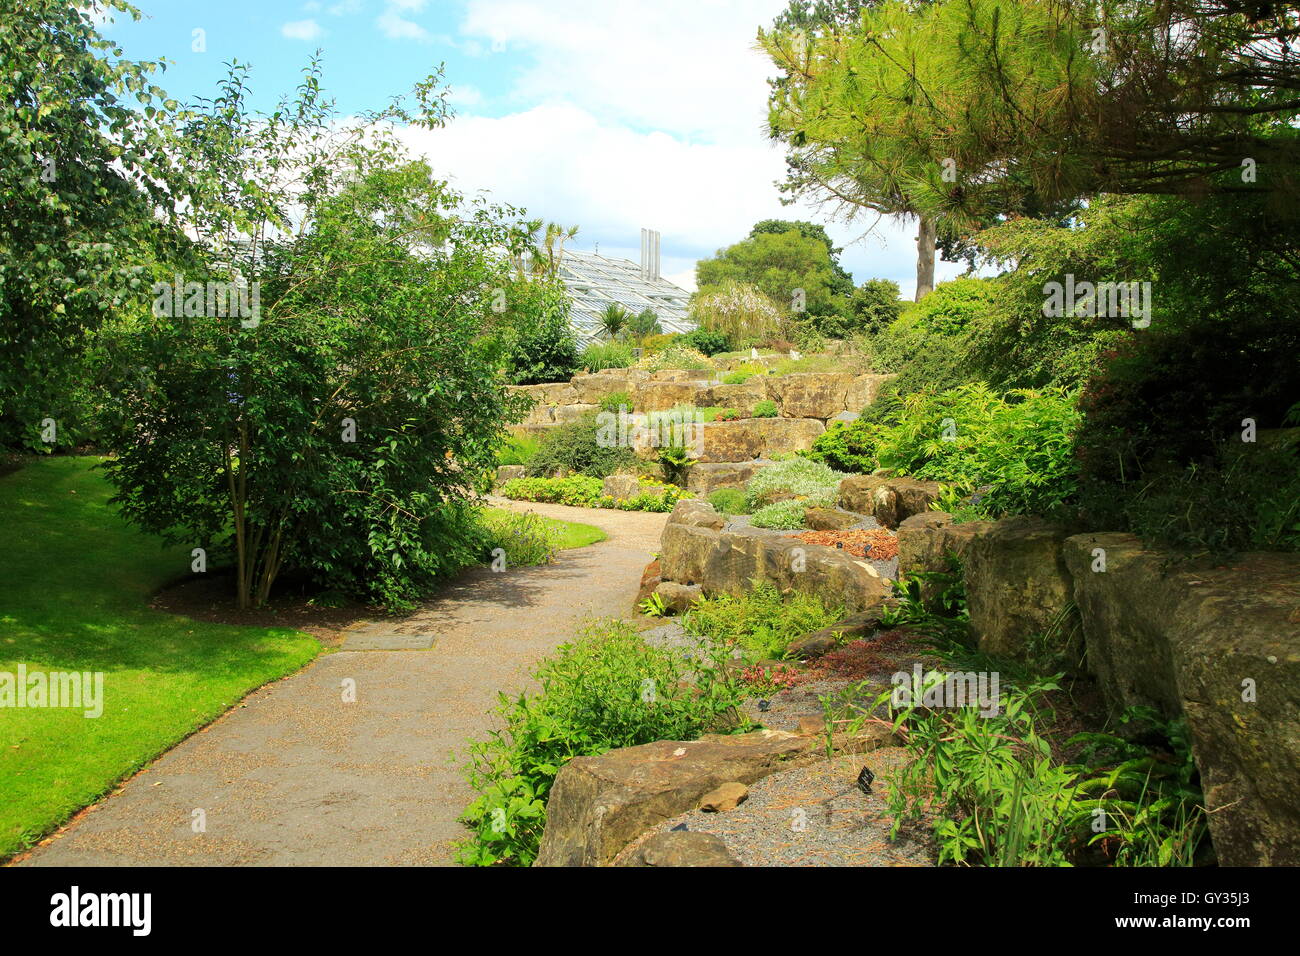 Chemin à travers les plantes de rocaille, Kew Gardens, Royal Botanic Gardens, London, England, UK Banque D'Images